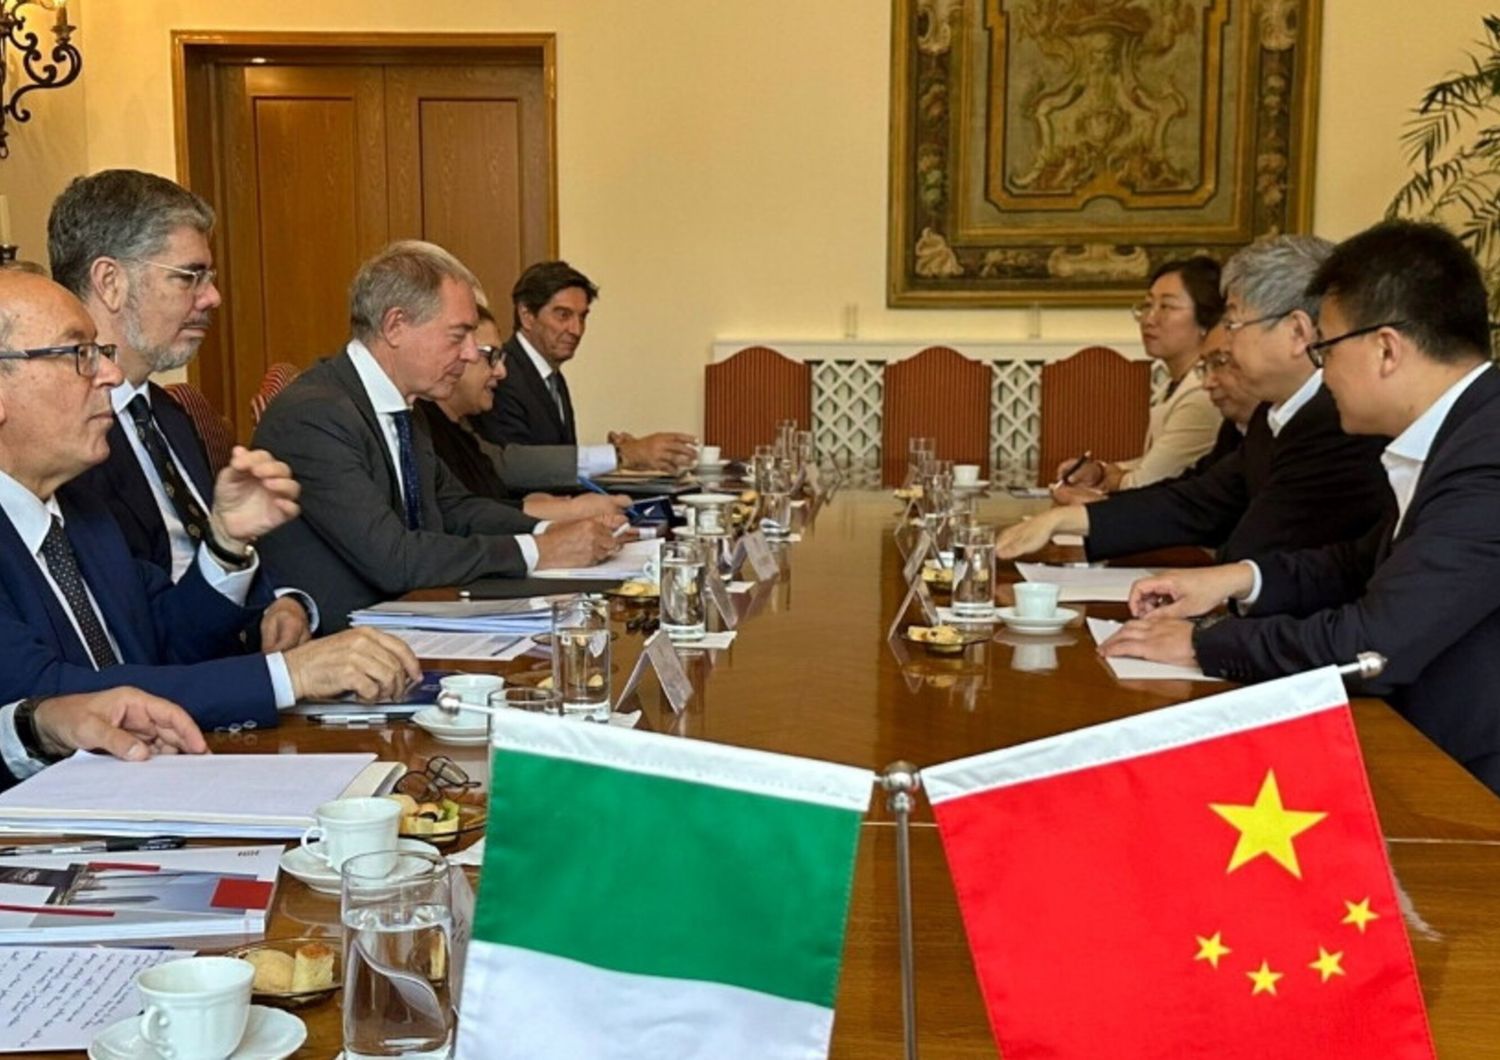 Le ministre italien du 'Made in Italy', Adolfo Urso, à Pekin avec l'Ambassadeur italien en Chine, Massimo Ambrosetti et la délégation chinoise